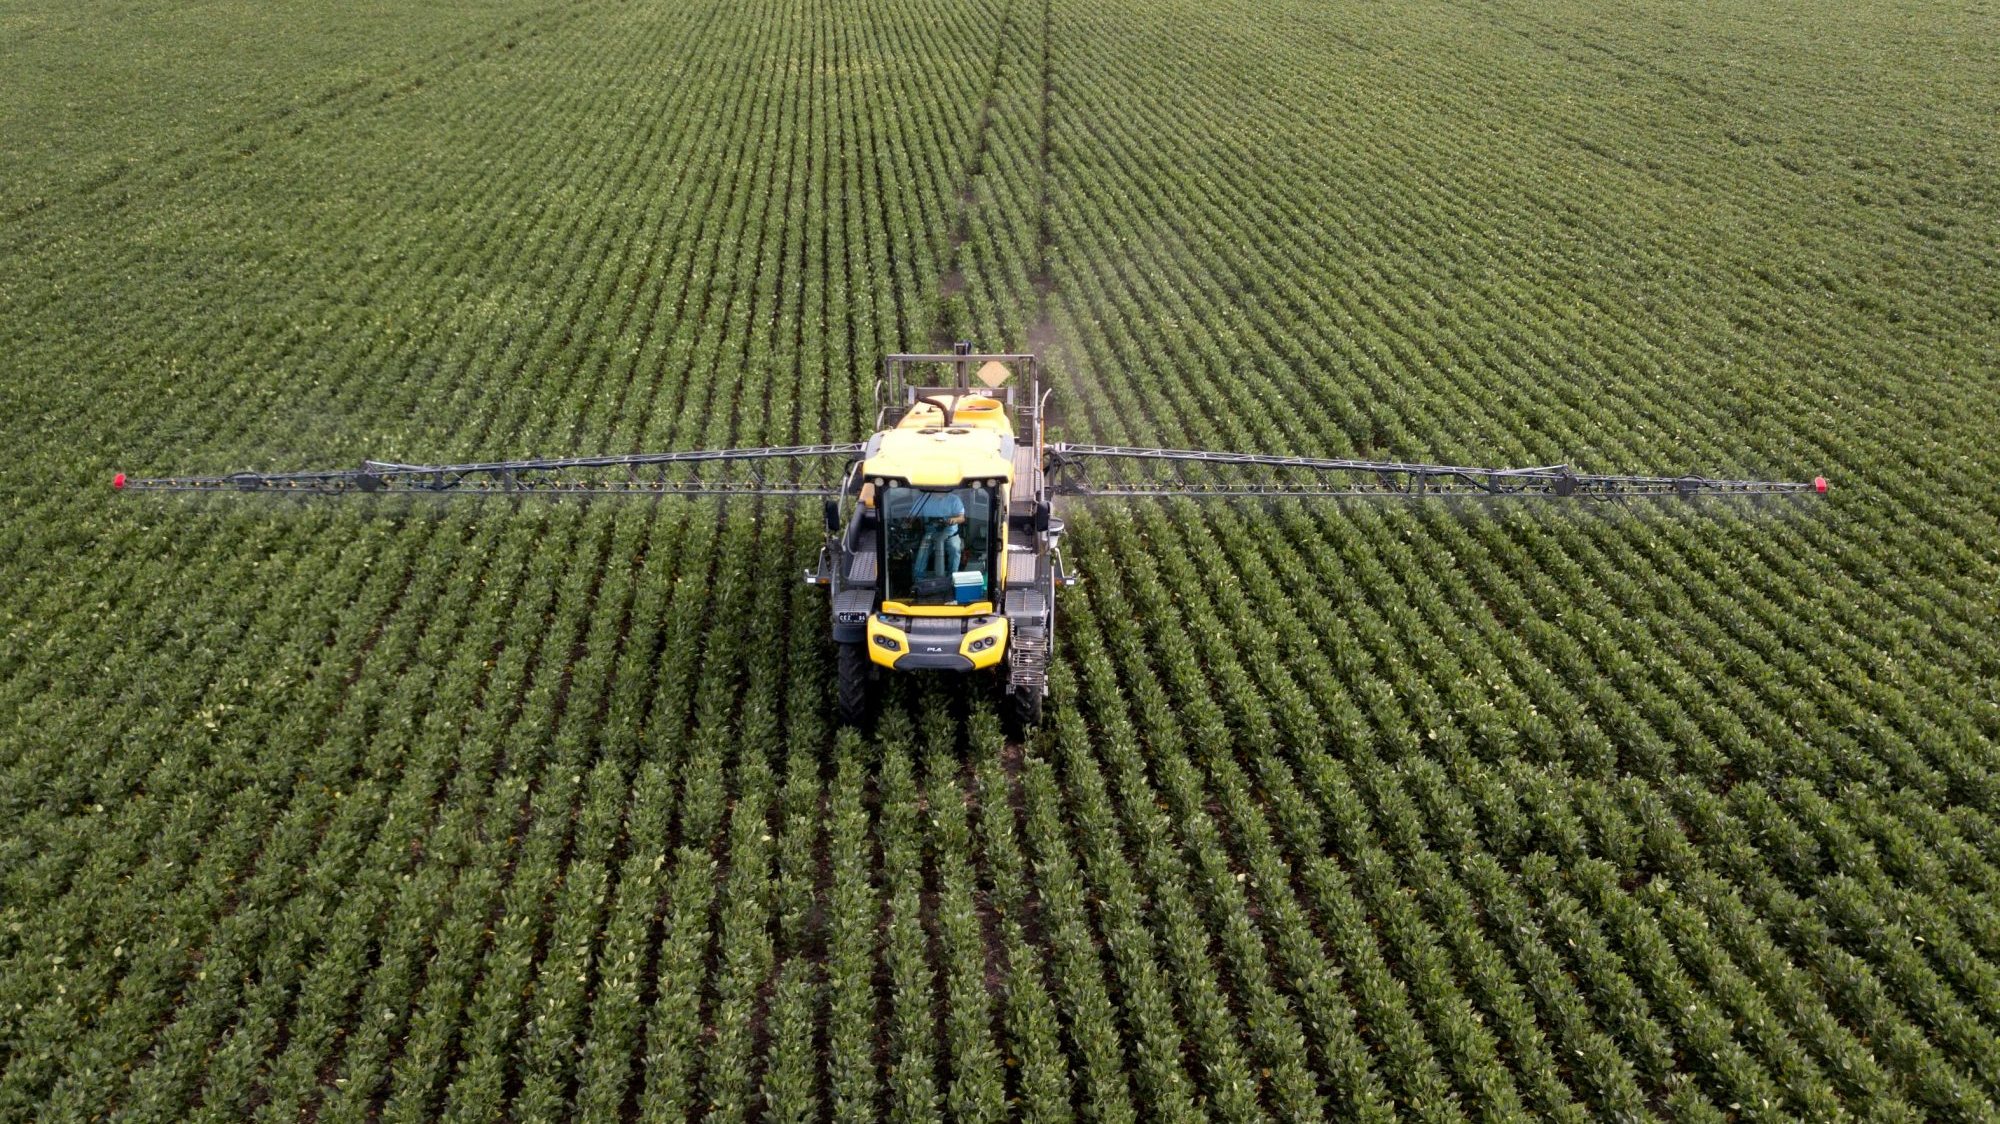 De acordo com a AEA, 83% dos solos agrícolas testados num estudo de 2019 continham resíduos de pesticidas